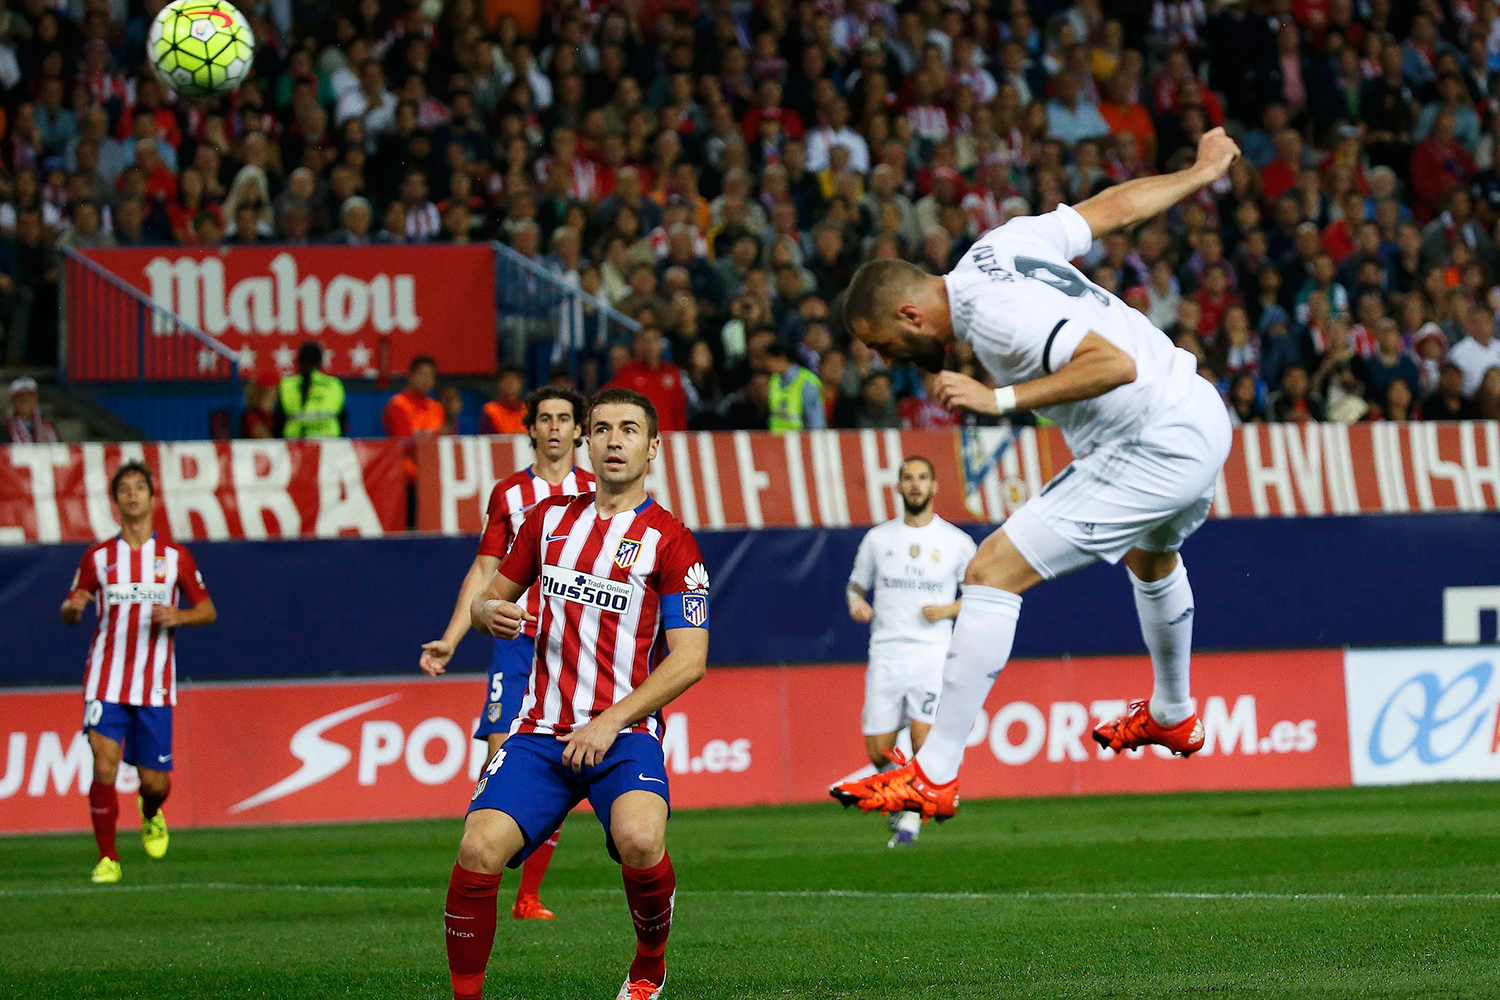 Reparto de goles y juego en el choque entre el Atlético de Madrid